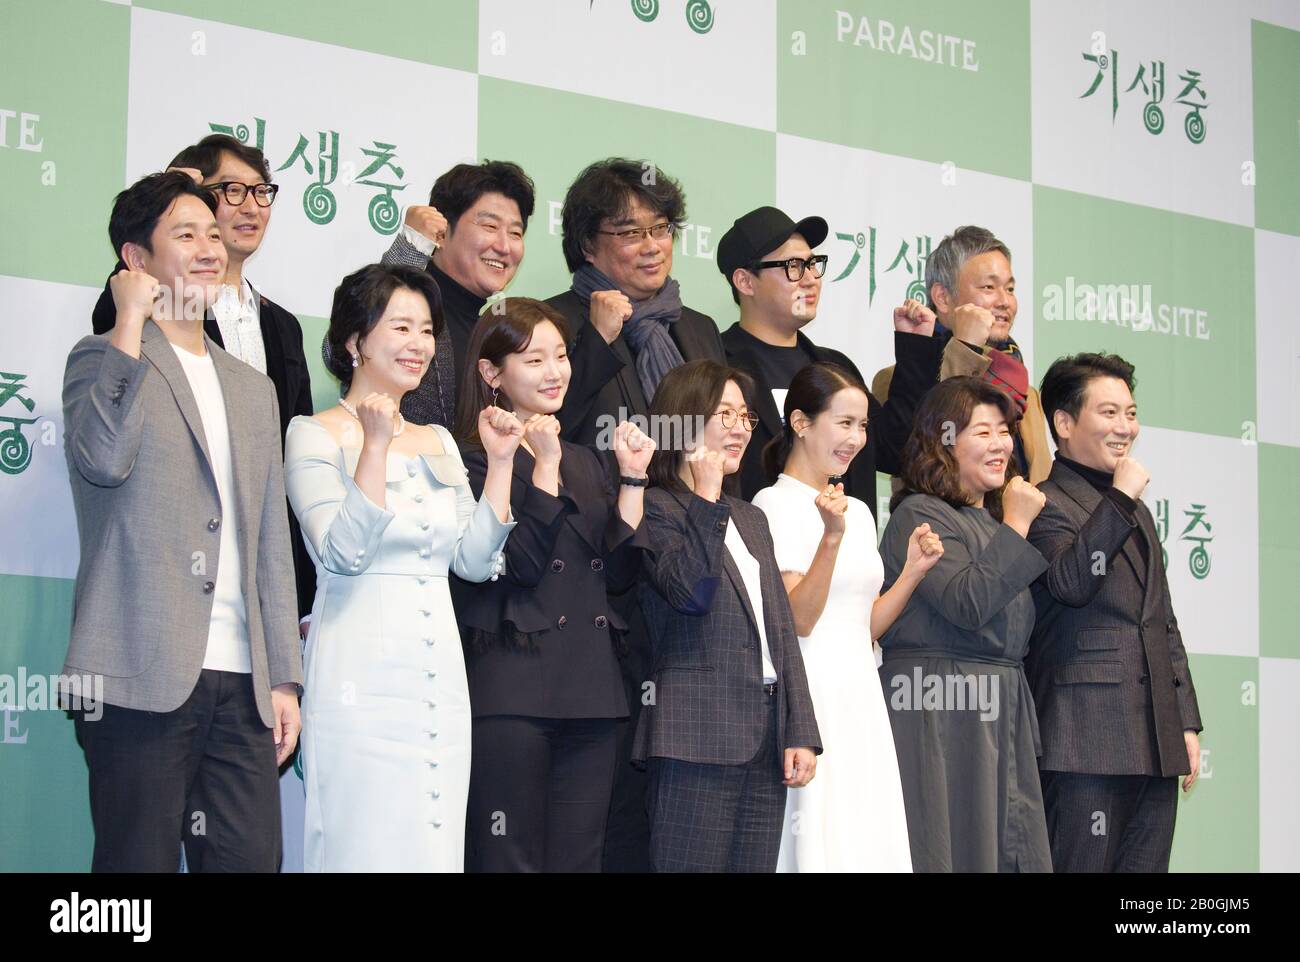 Yang Jin-Mo, Song Kang-Ho, Bong Joon-Ho, Han Jin-Won, Lee Ha-Jun, Lee Sun-Kyun, Jang Hye-Jin, Park So-Dam, Kwak Sin-Ae, Cho Yeo-Jeong, Lee Jung-Eun Et Park Myung-Hoon, 19 Février 2020 : L-Mo-Wang, Réalisateur Yang-Jang, Réalisateur De Film, Jang-Jang-Wang, Réalisateur Le scénariste Han Jin-Won et le créateur de production Lee Ha-Jun pose avec (L-R, première rangée) les acteurs Lee Sun-Kyun, Jang Hye-Jin, Park So-Dam, producteur de films Kwak Sin-Ae, les acteurs Cho Yeo-Jeong, Lee Jung-Eun et Park Myung-Hoon lors d'une conférence de presse organisée pour leur film primé Oscar en Corée du Sud. Le Coréen Banque D'Images